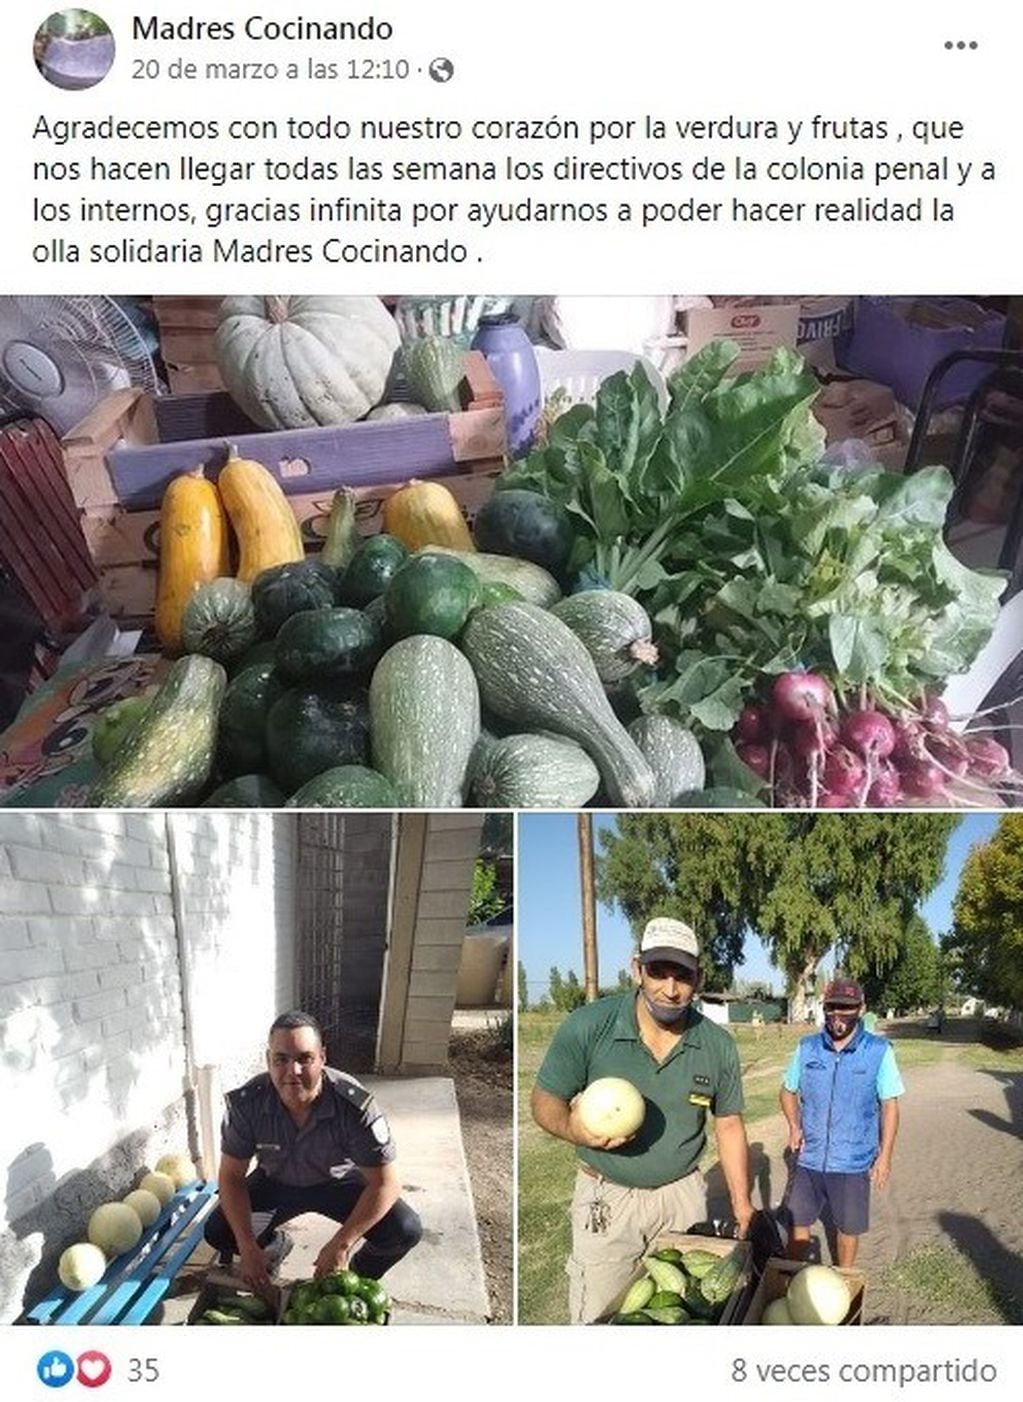 Donan a Madres Cocinando la verdura que cultivan en la colonia penal de San Rafael.